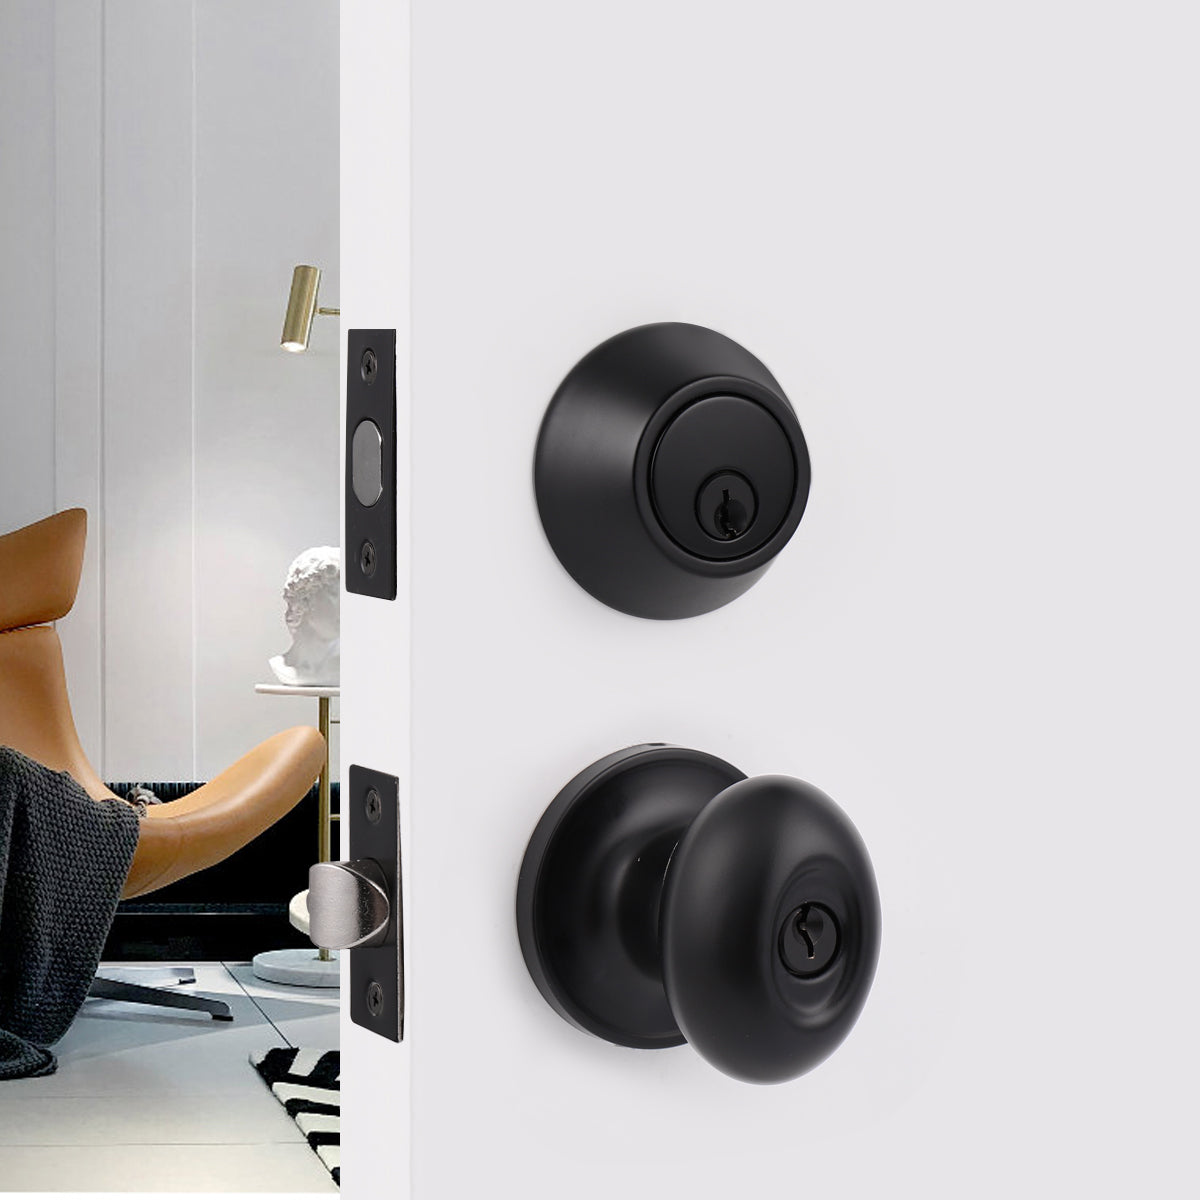 Keyed Alike Oval Egg Door Knobs with Single Cylinder Deadbolt Lock set Black Finish DL692ET01BK